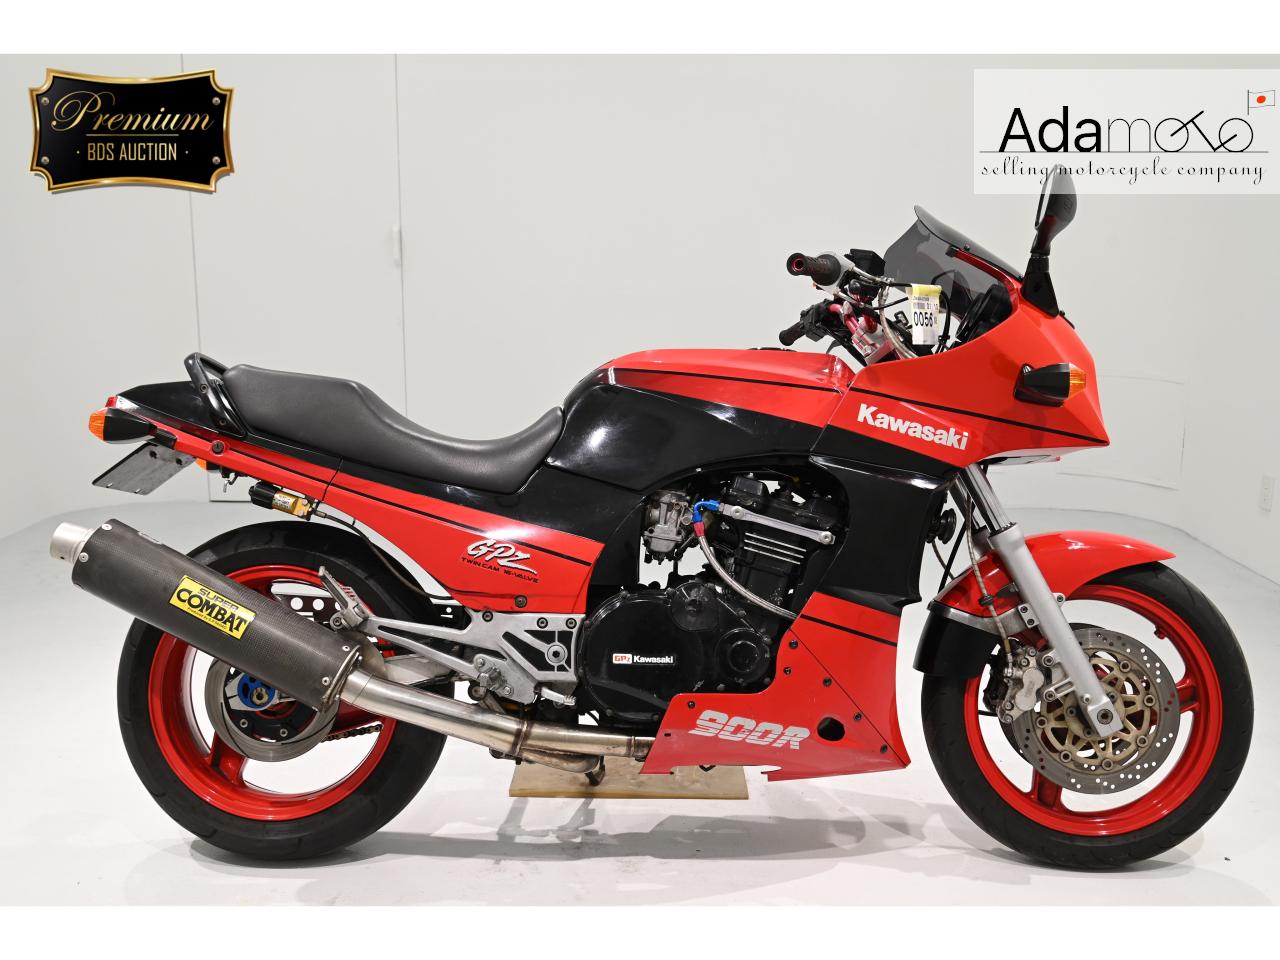 Kawasaki GPZ900R - Adamoto - Motorcycles from Japan